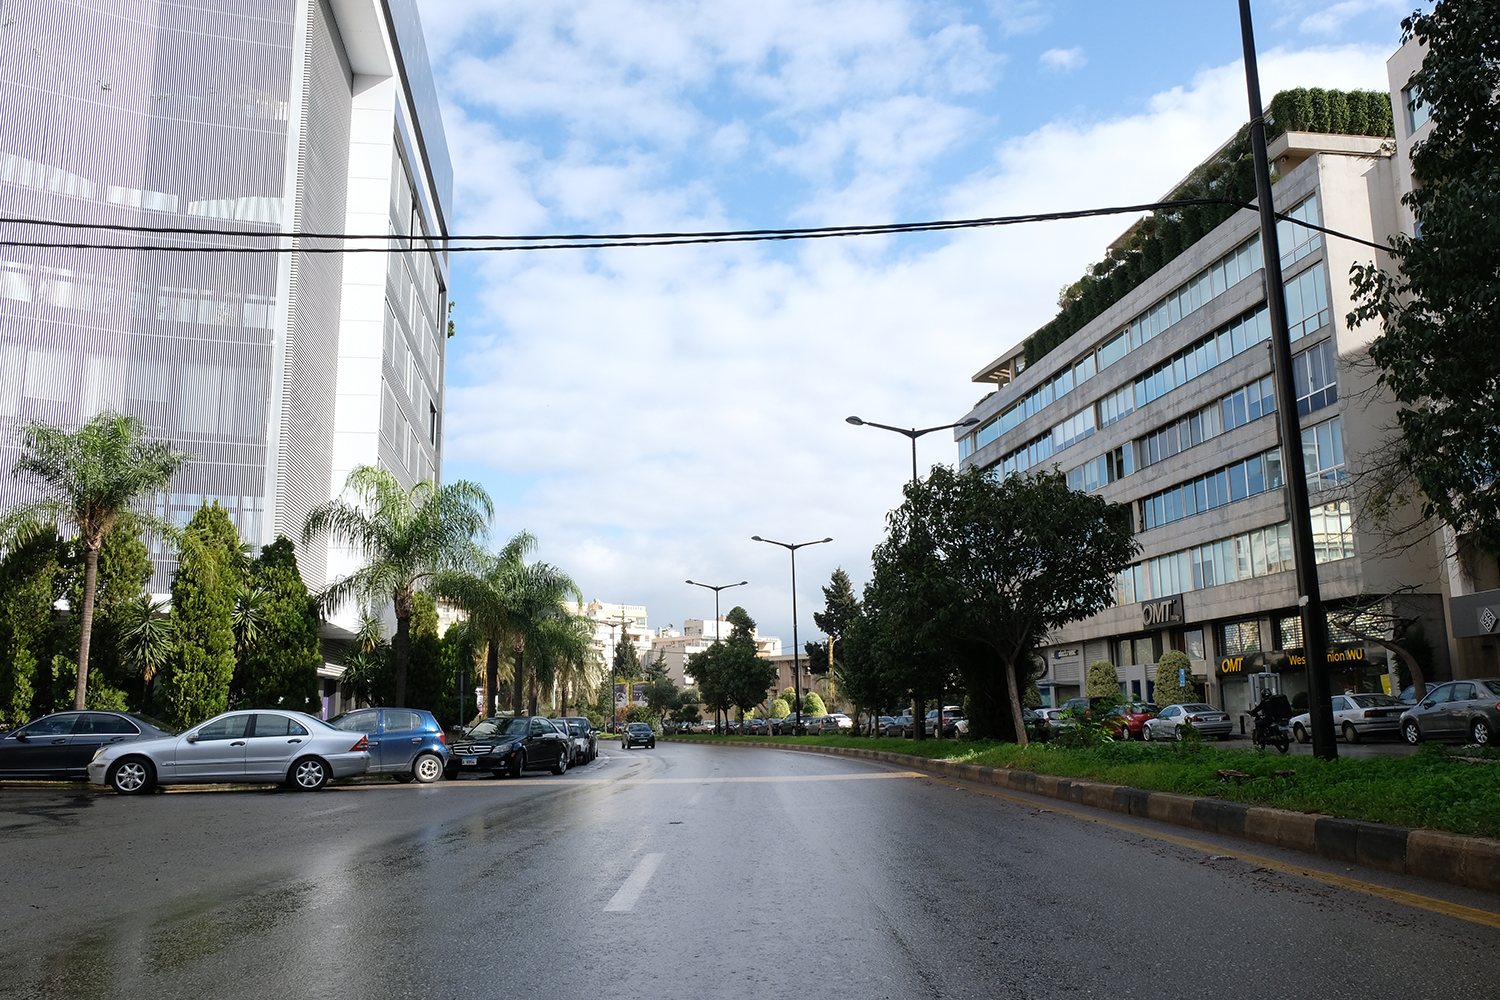 Le boulevard Sami El Solh déborde d’habitude de voitures, taxis, et deux-roues. En tant que piéton, il est difficile, voire dangereux de traverser. Durant le confinement, il est désormais possible de s’accroupir eu milieu de la route pour prendre une photo … © Globe Reporters